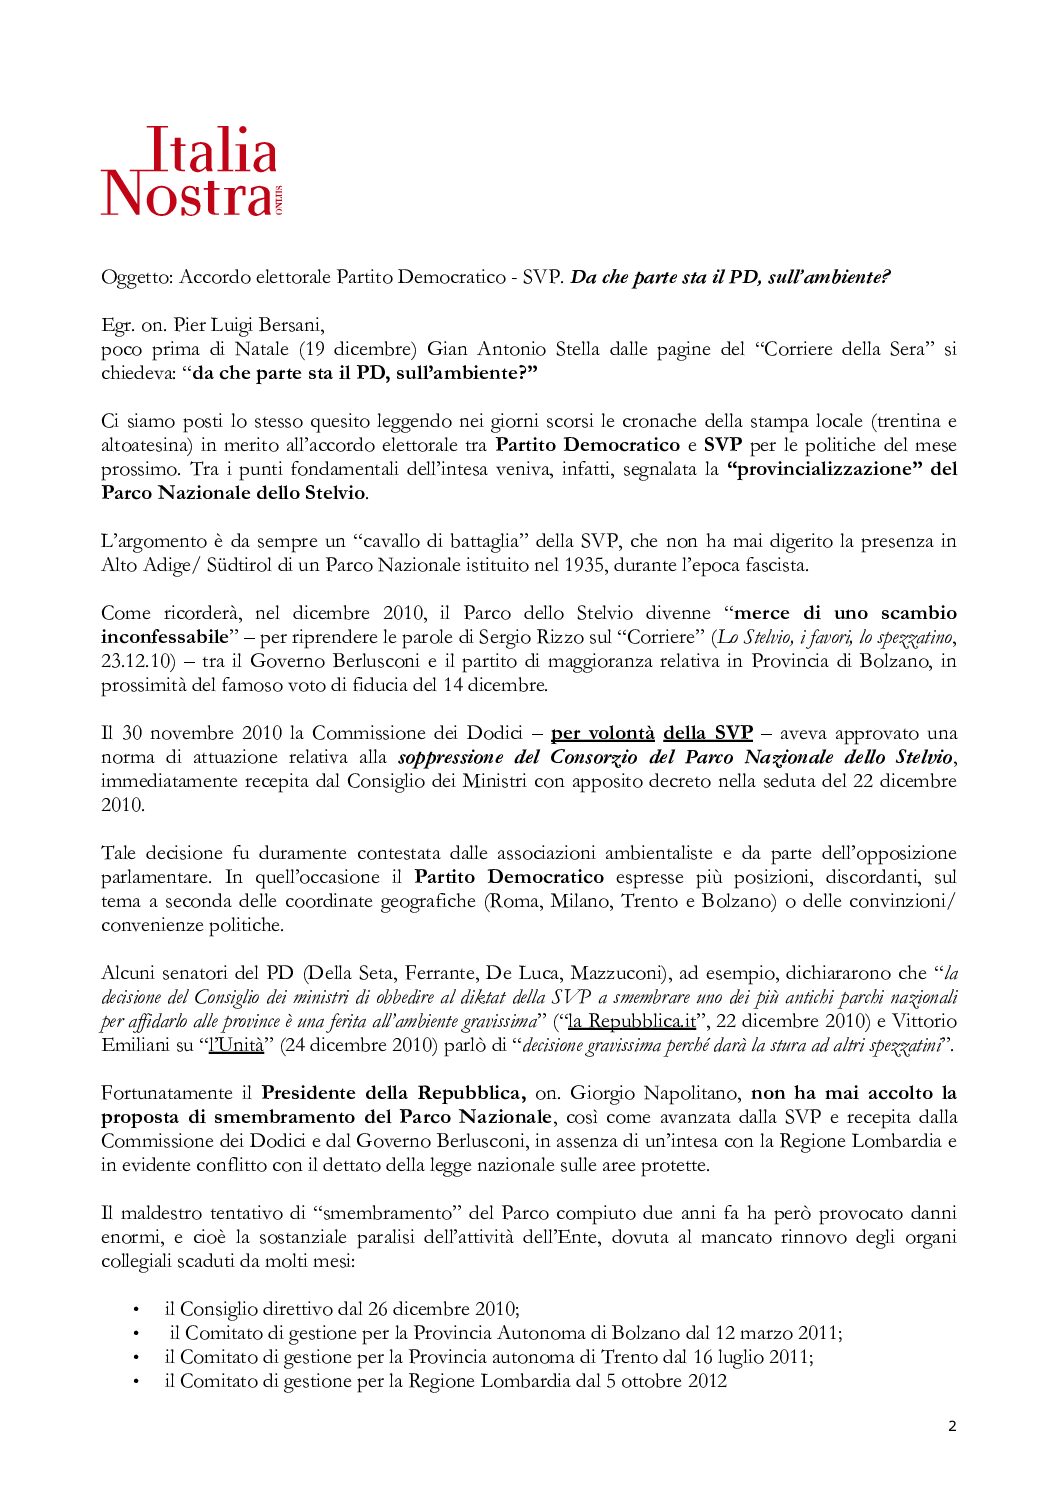 Accordo elettorale PD – SVP. Lettera aperta di ITALIA NOSTRA di Trento e Bolzano su ipotesi provincializzazione del Parco Nazionale dello Stelvio